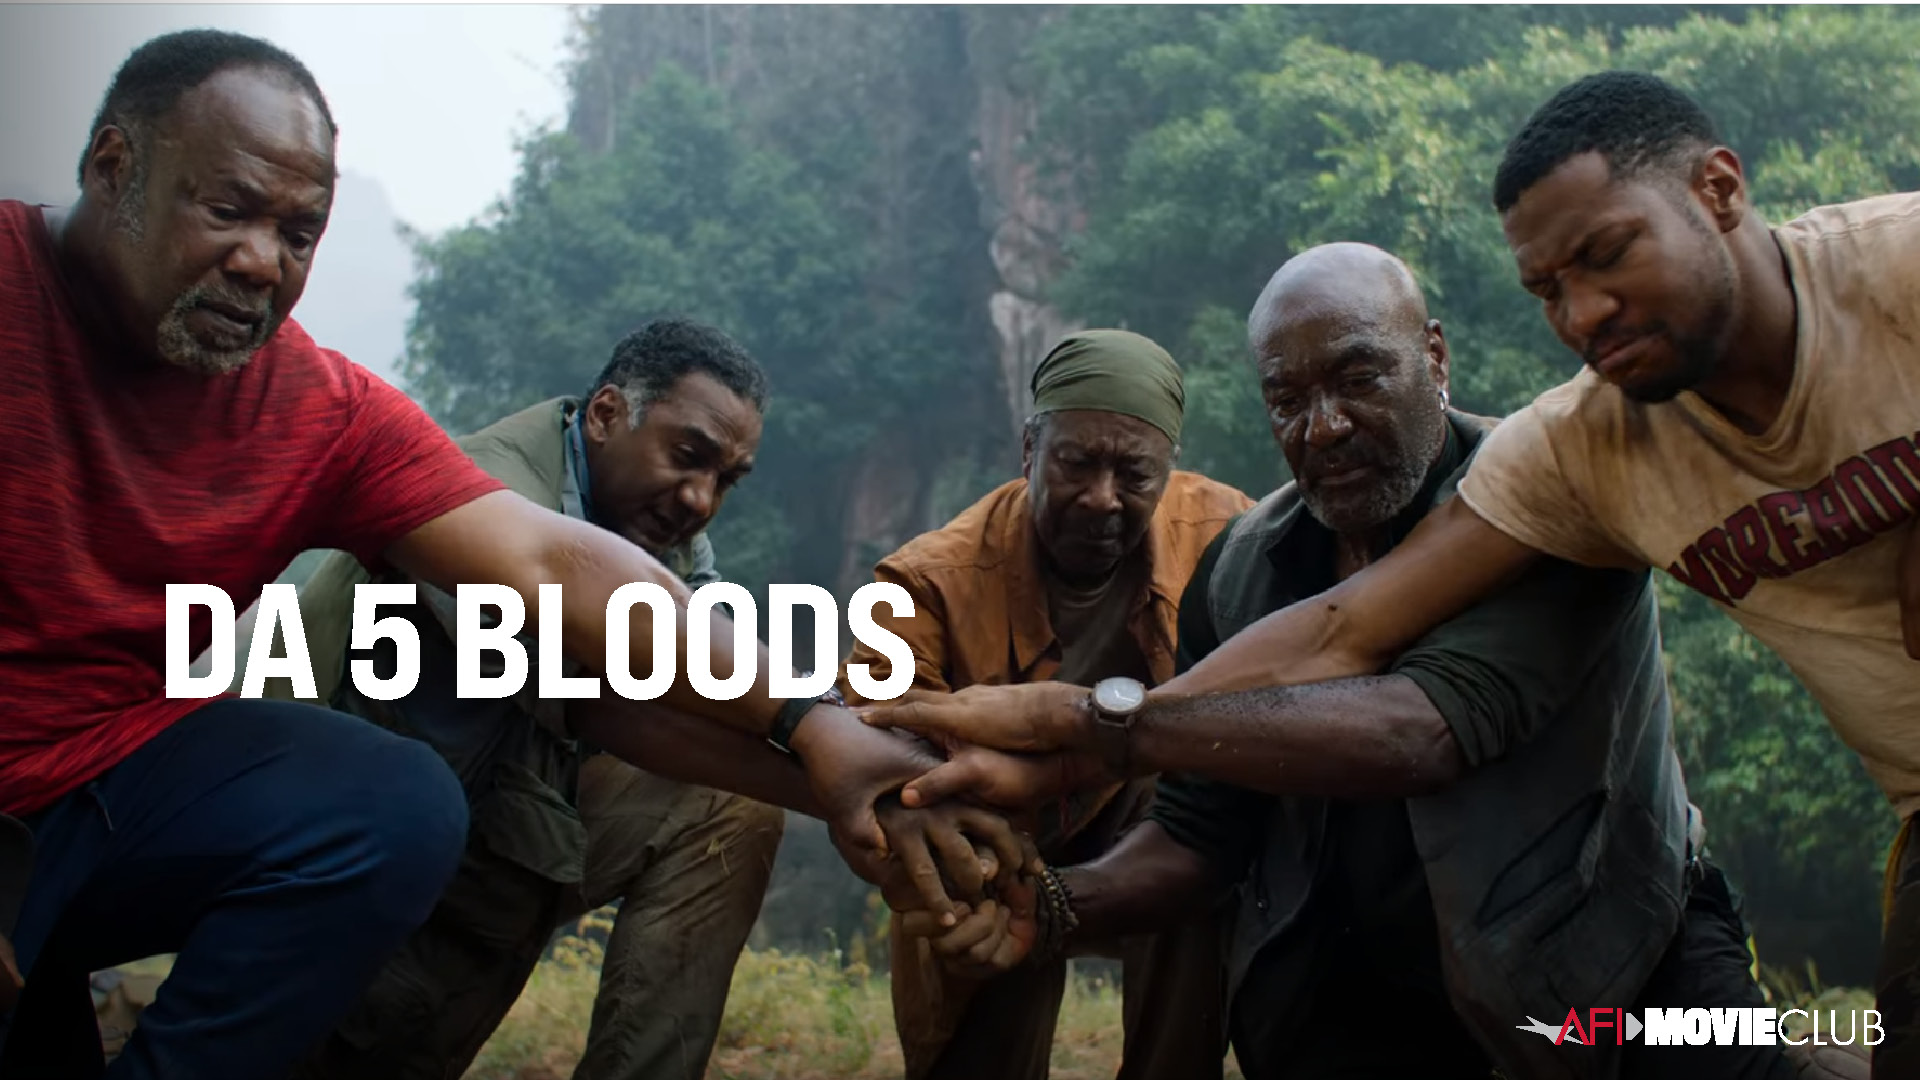 Da 5 Bloods Film Still